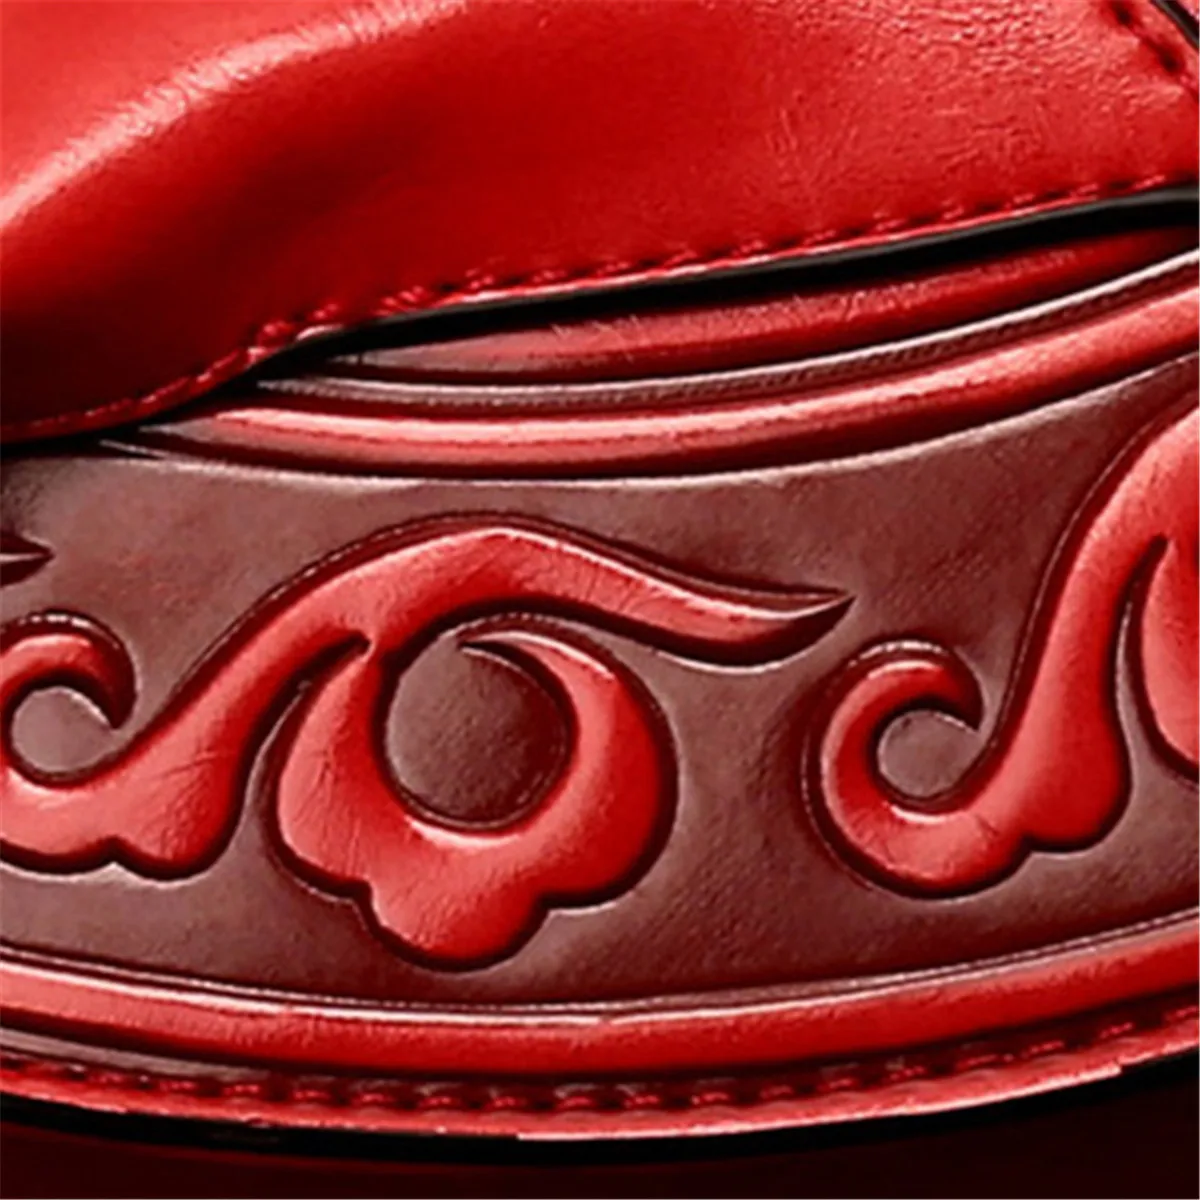 Bolsa Feminina, китайский стиль, Красная Женская Роскошная сумка, дизайнерская, из искусственной кожи, с тиснением, через плечо, тоут, Ретро стиль, сумка через плечо